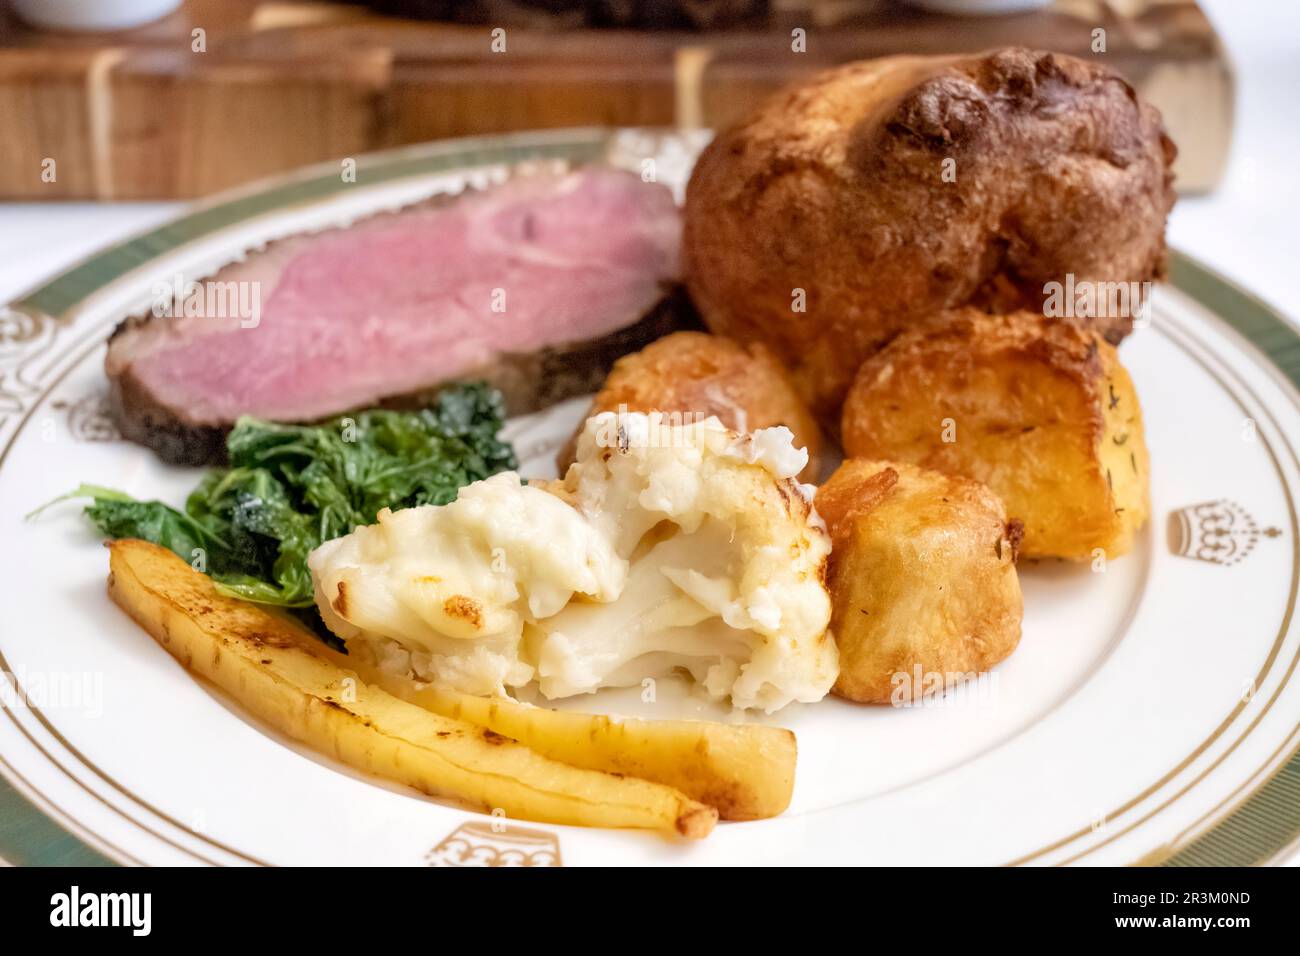 Ein traditionelles englisches Abendessen mit Braten. Serviert mit Rinderstriploin, Bratkartoffeln, Blumenkohl, Pastinaken, Kohl und einem Yorkshire Pudding Stockfoto